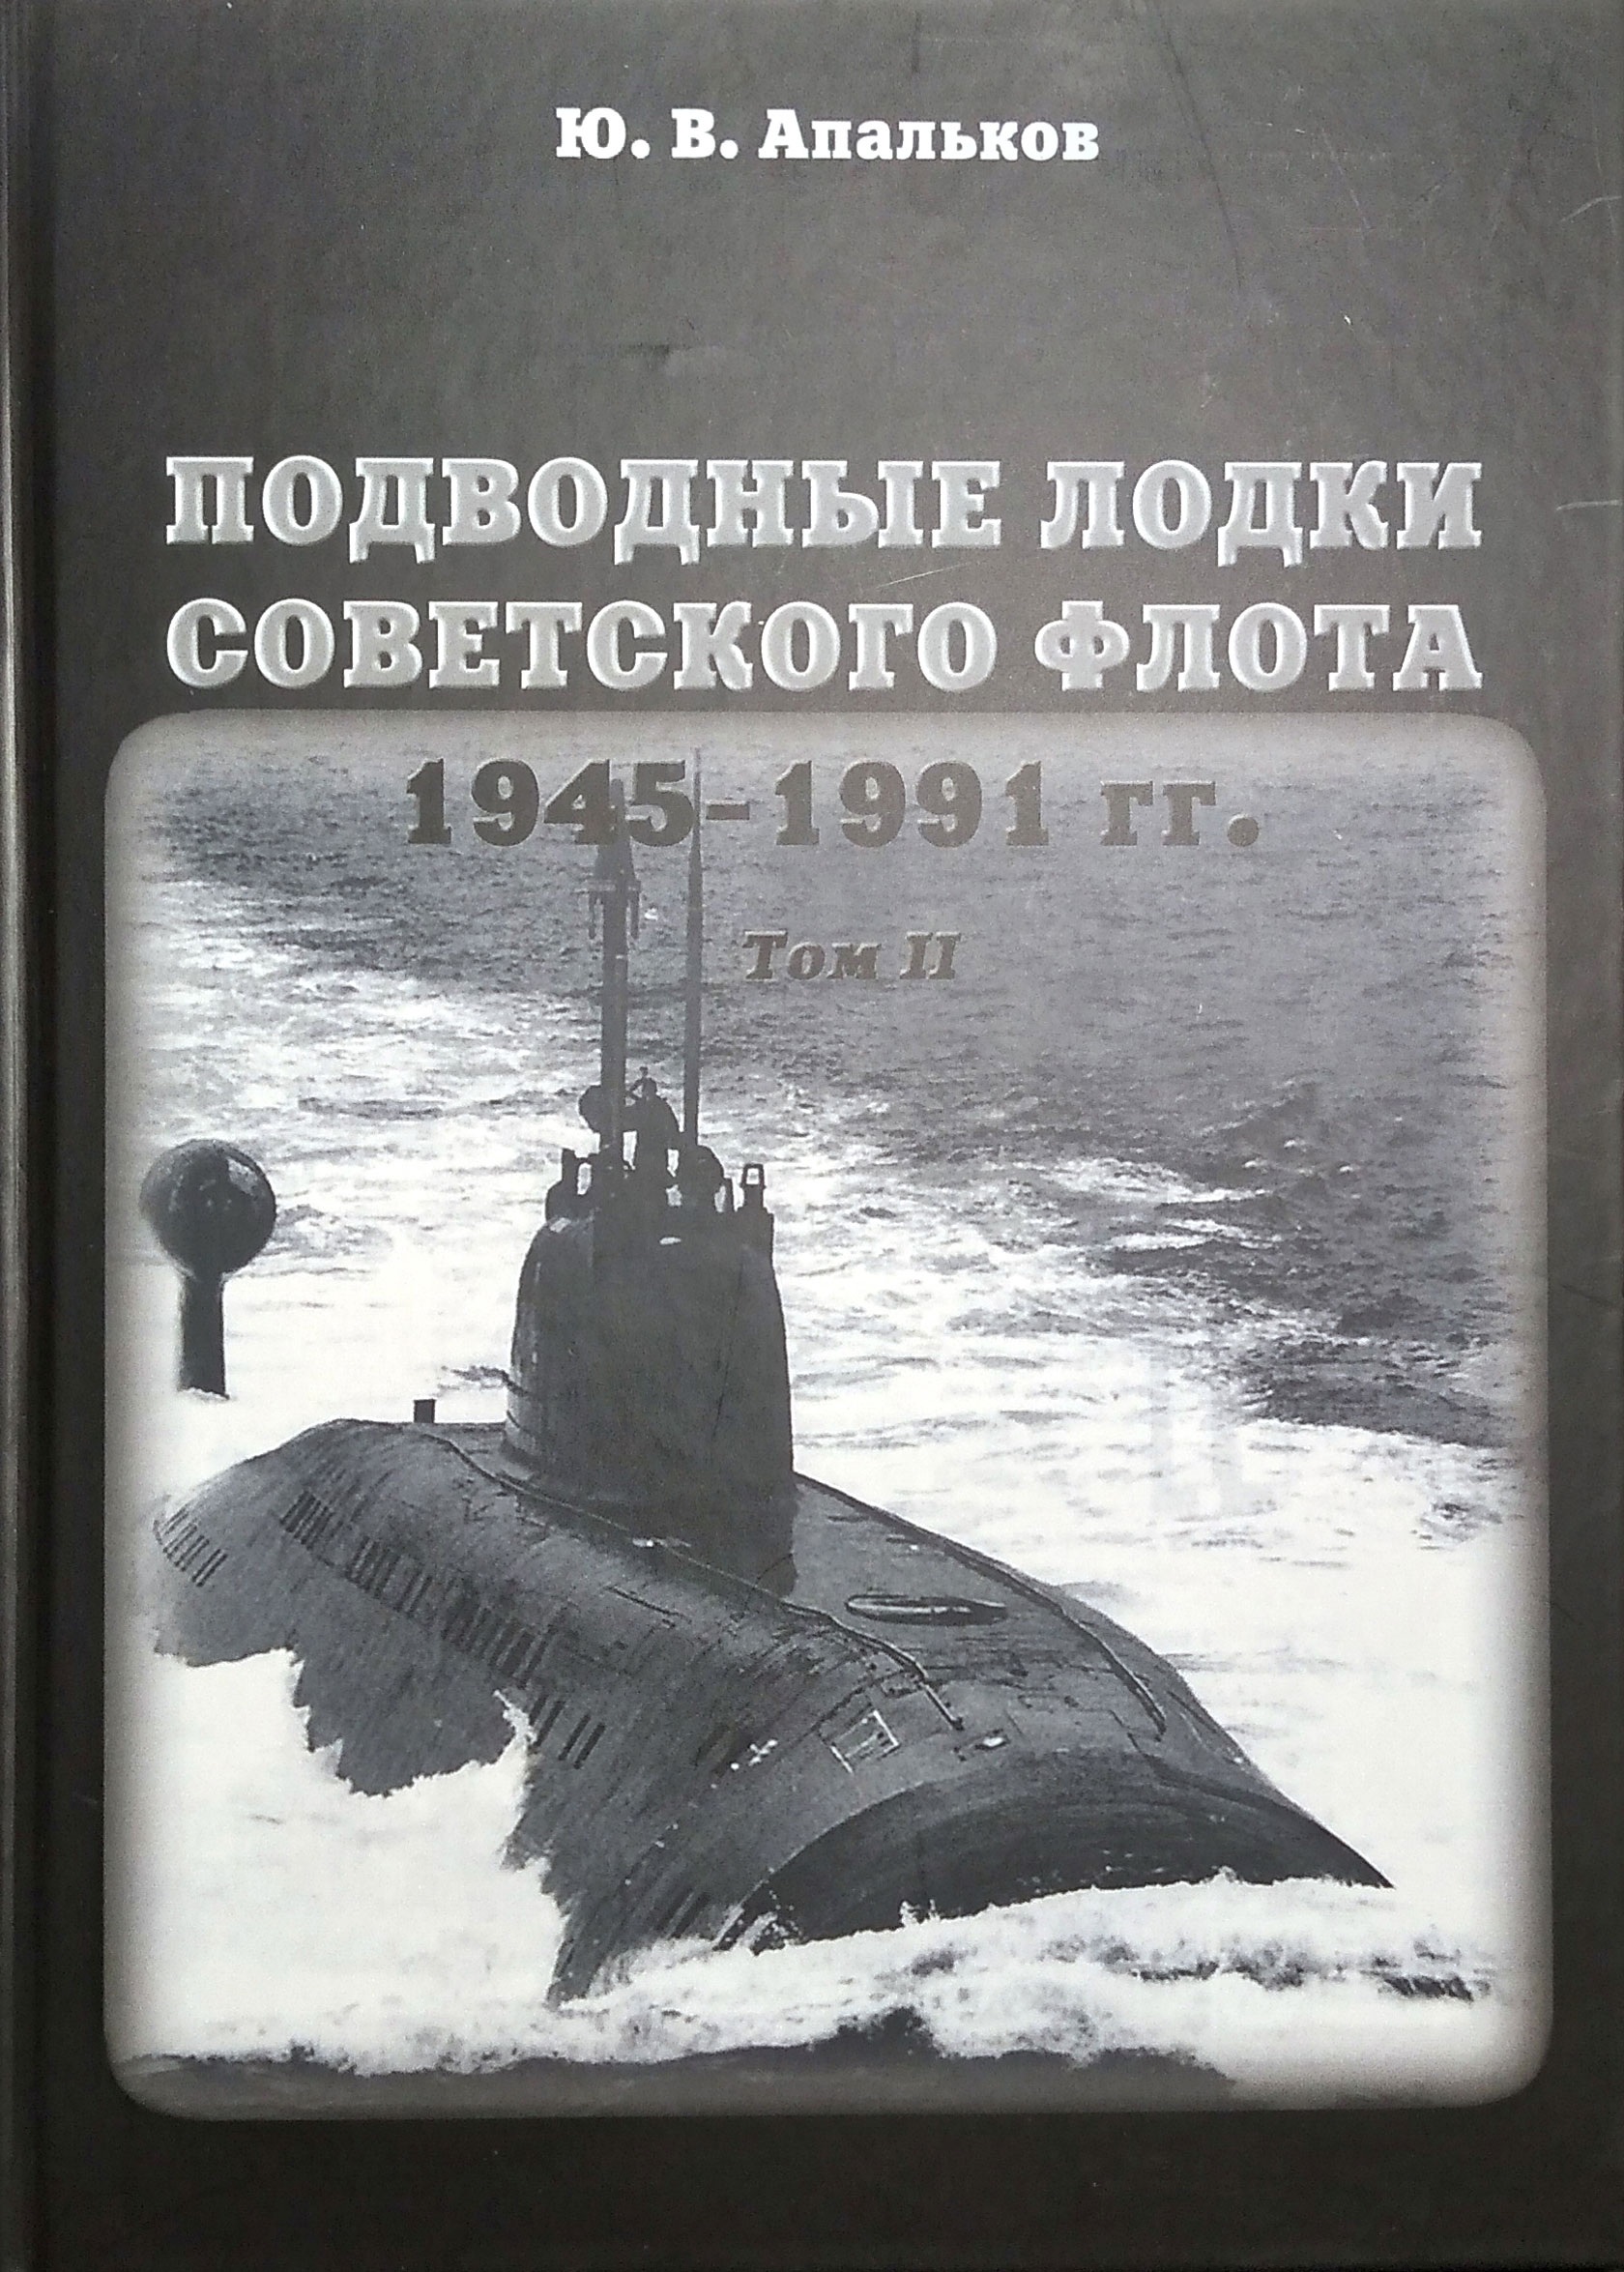     1945-1991 .  2